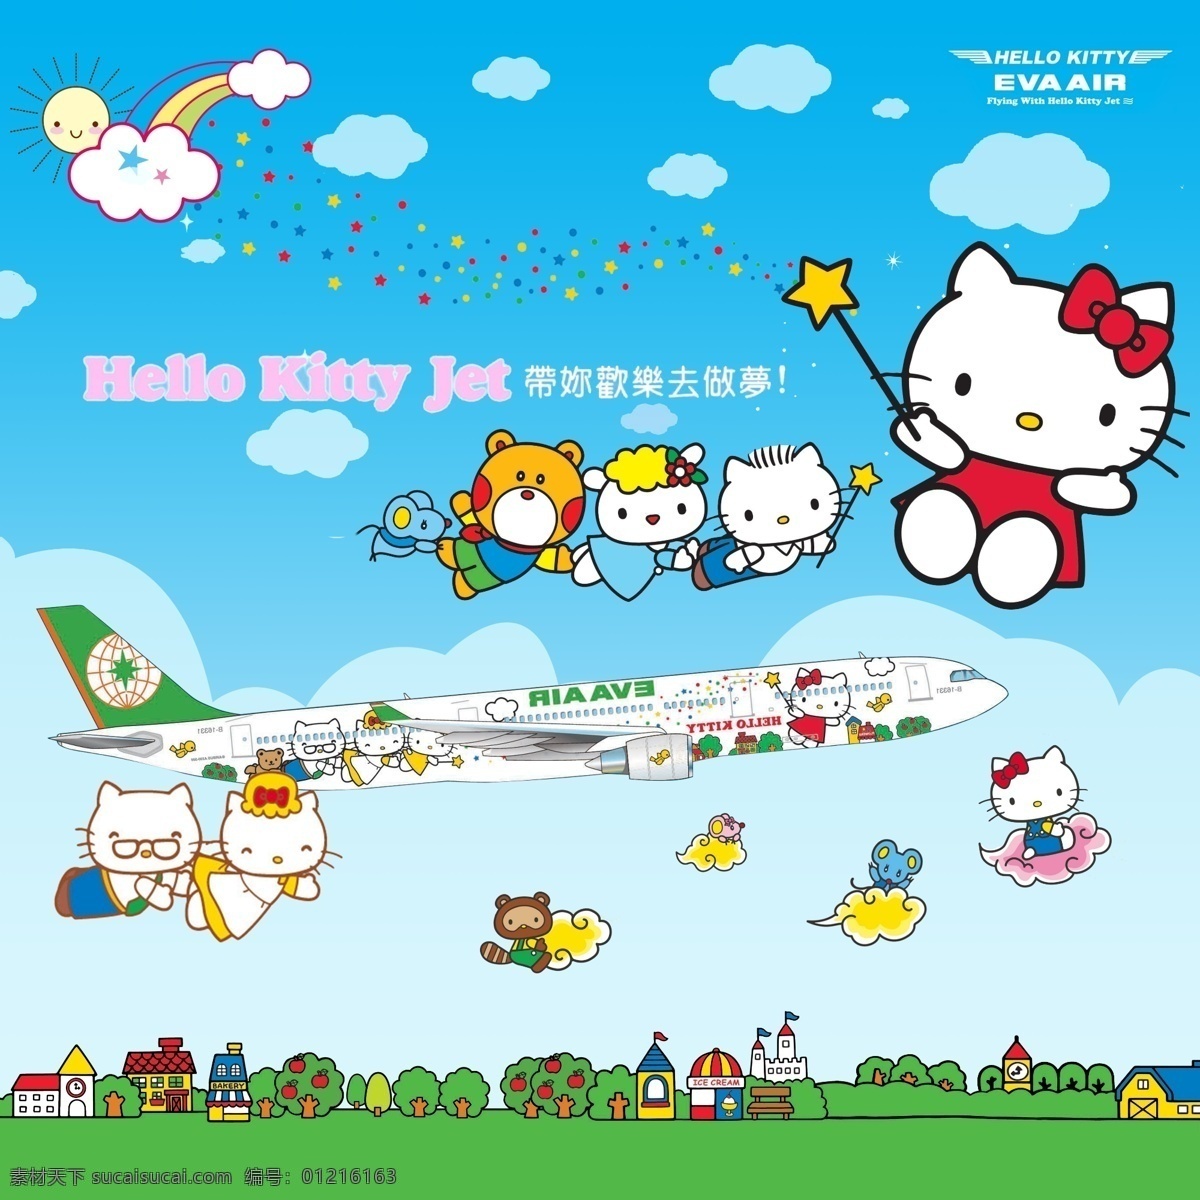 立荣 航空 kitty 宣传海报 立荣航空公司 宣传 海报 风景 旅行 hello